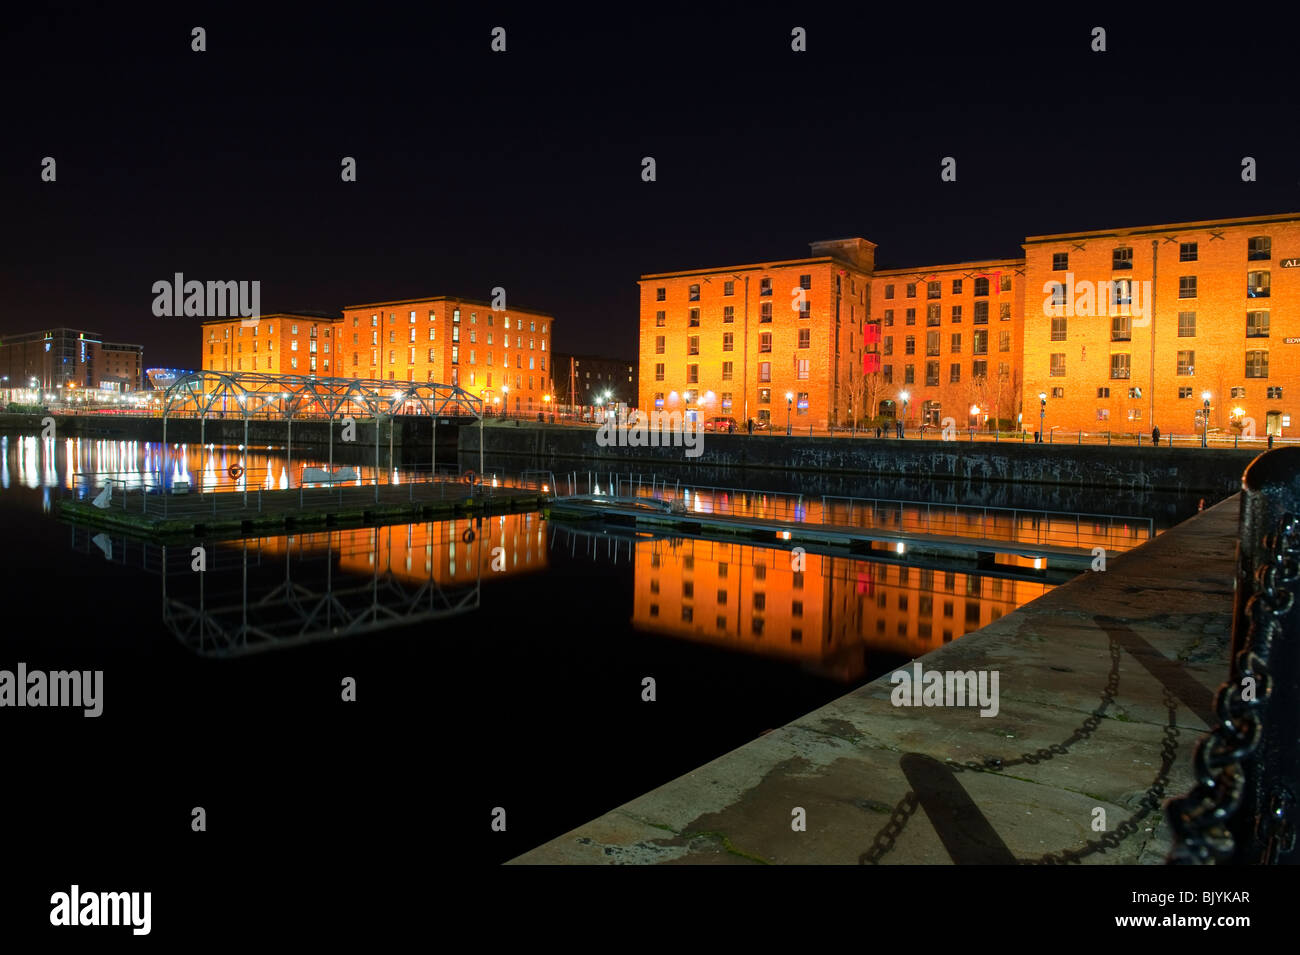 Albert Dock touristischen Attraktion Liverpool Merseyside UK Stockfoto